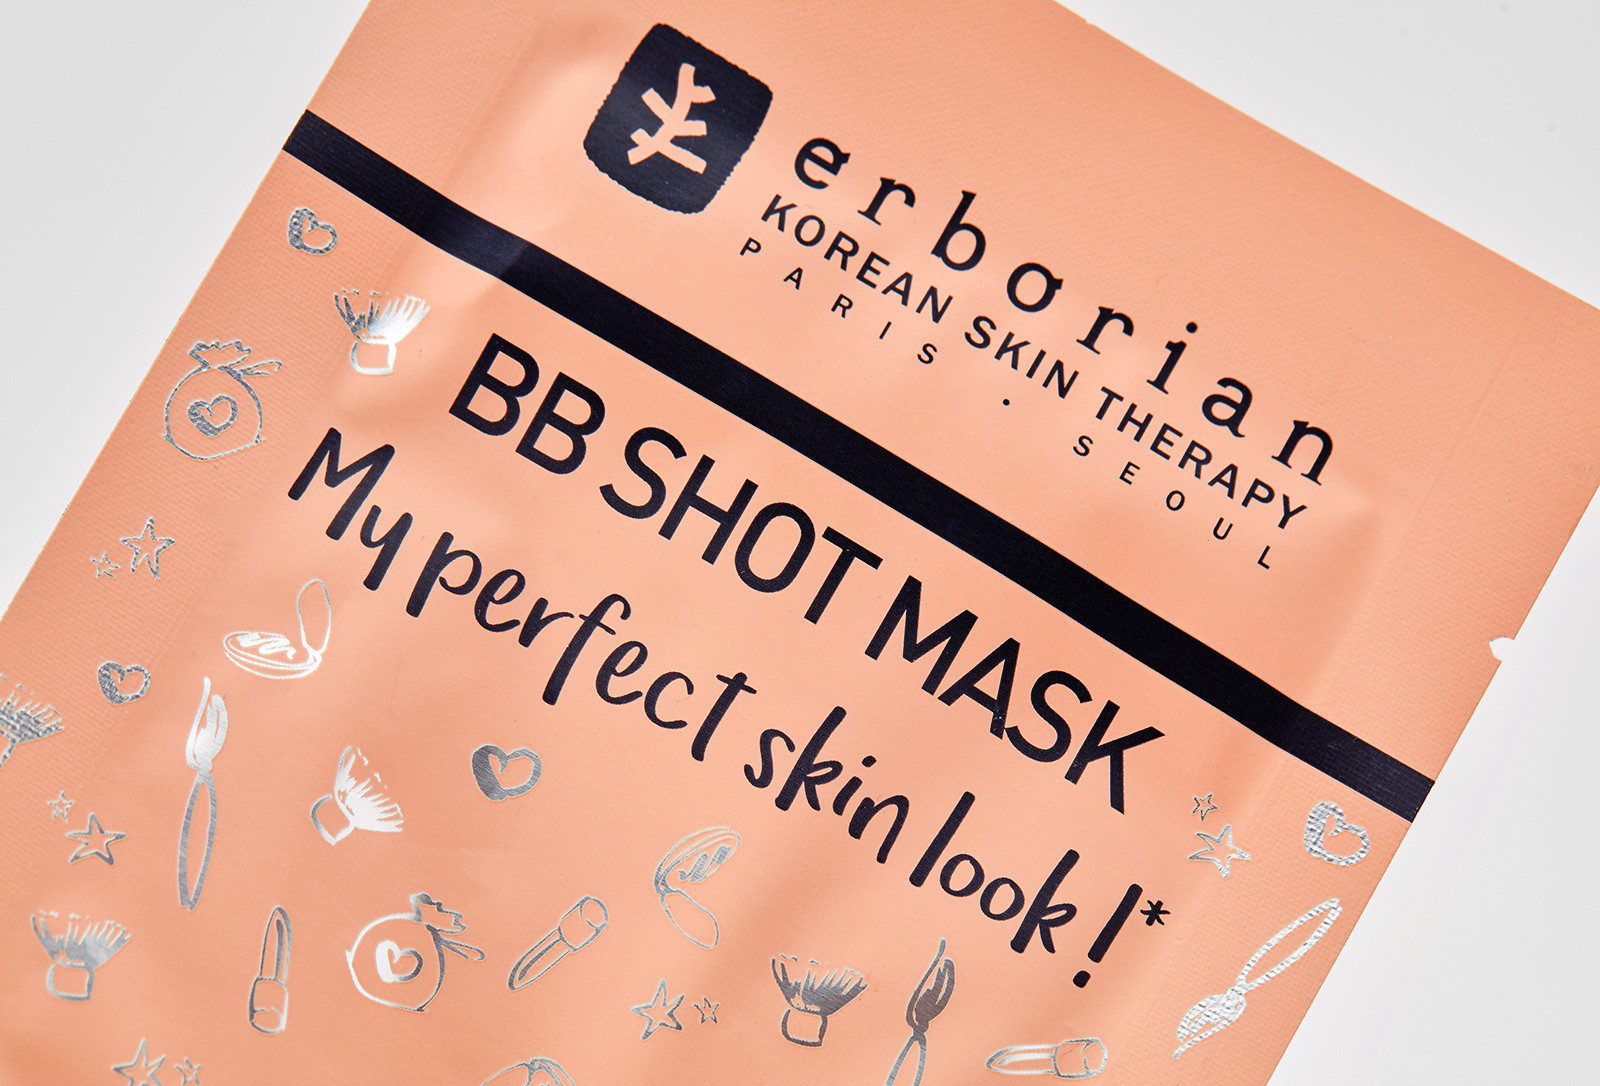 Маска для обличчя Erborian BB Shot Mask